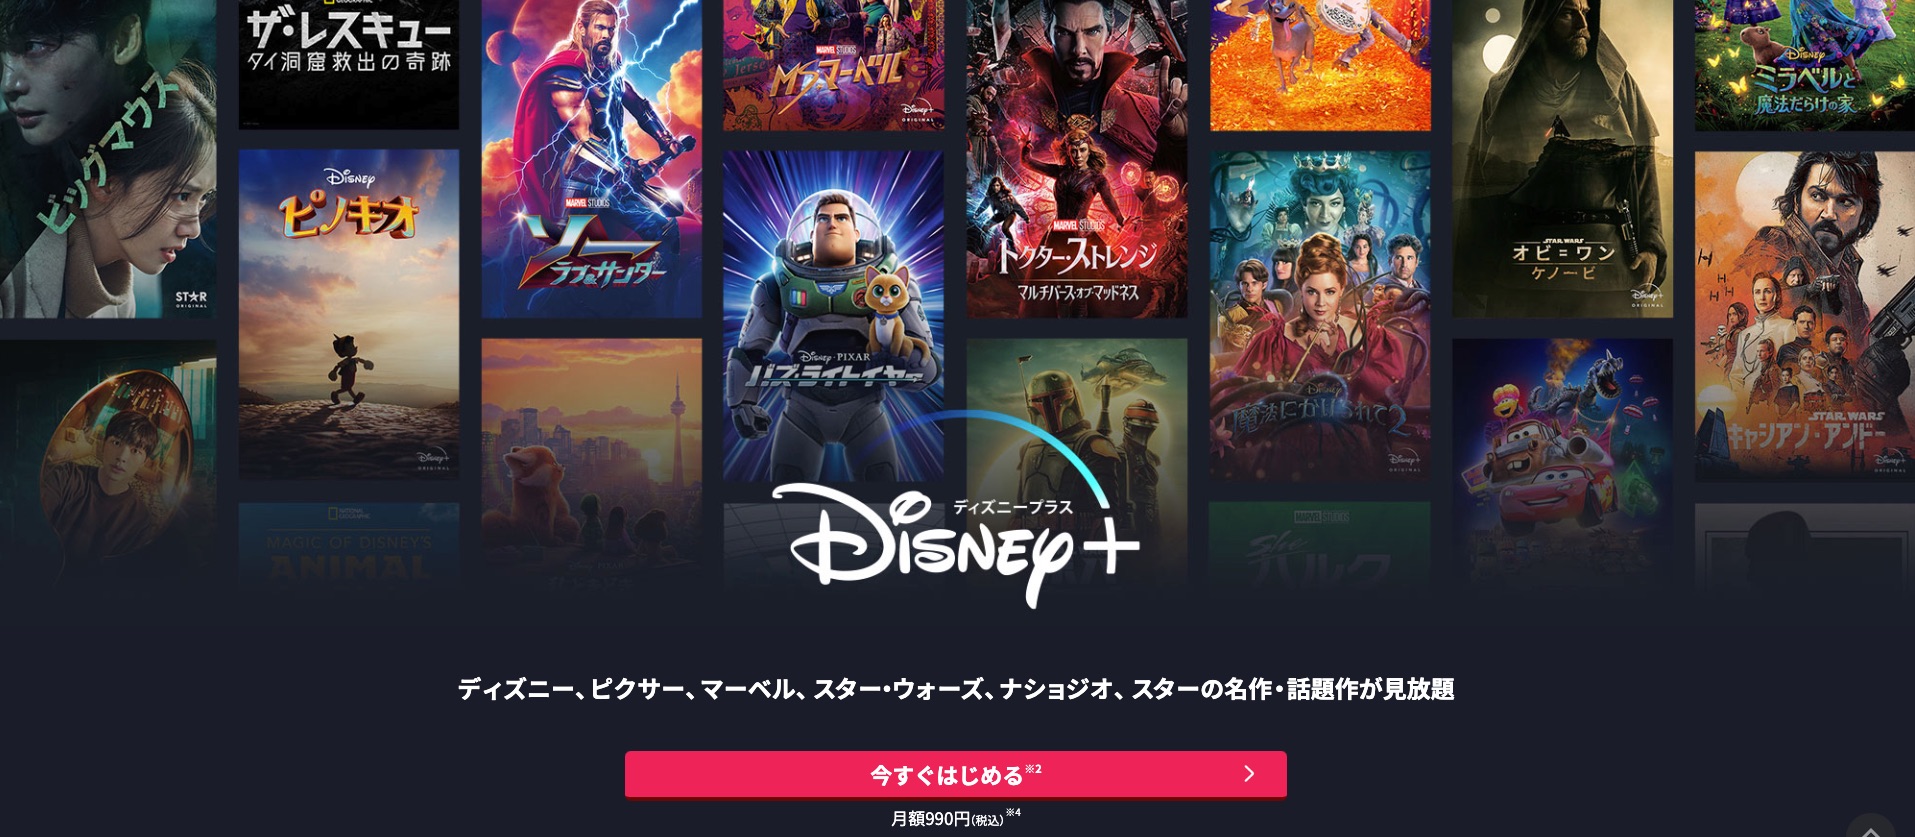 Disney+映画アリス・イン・ワンダーランド